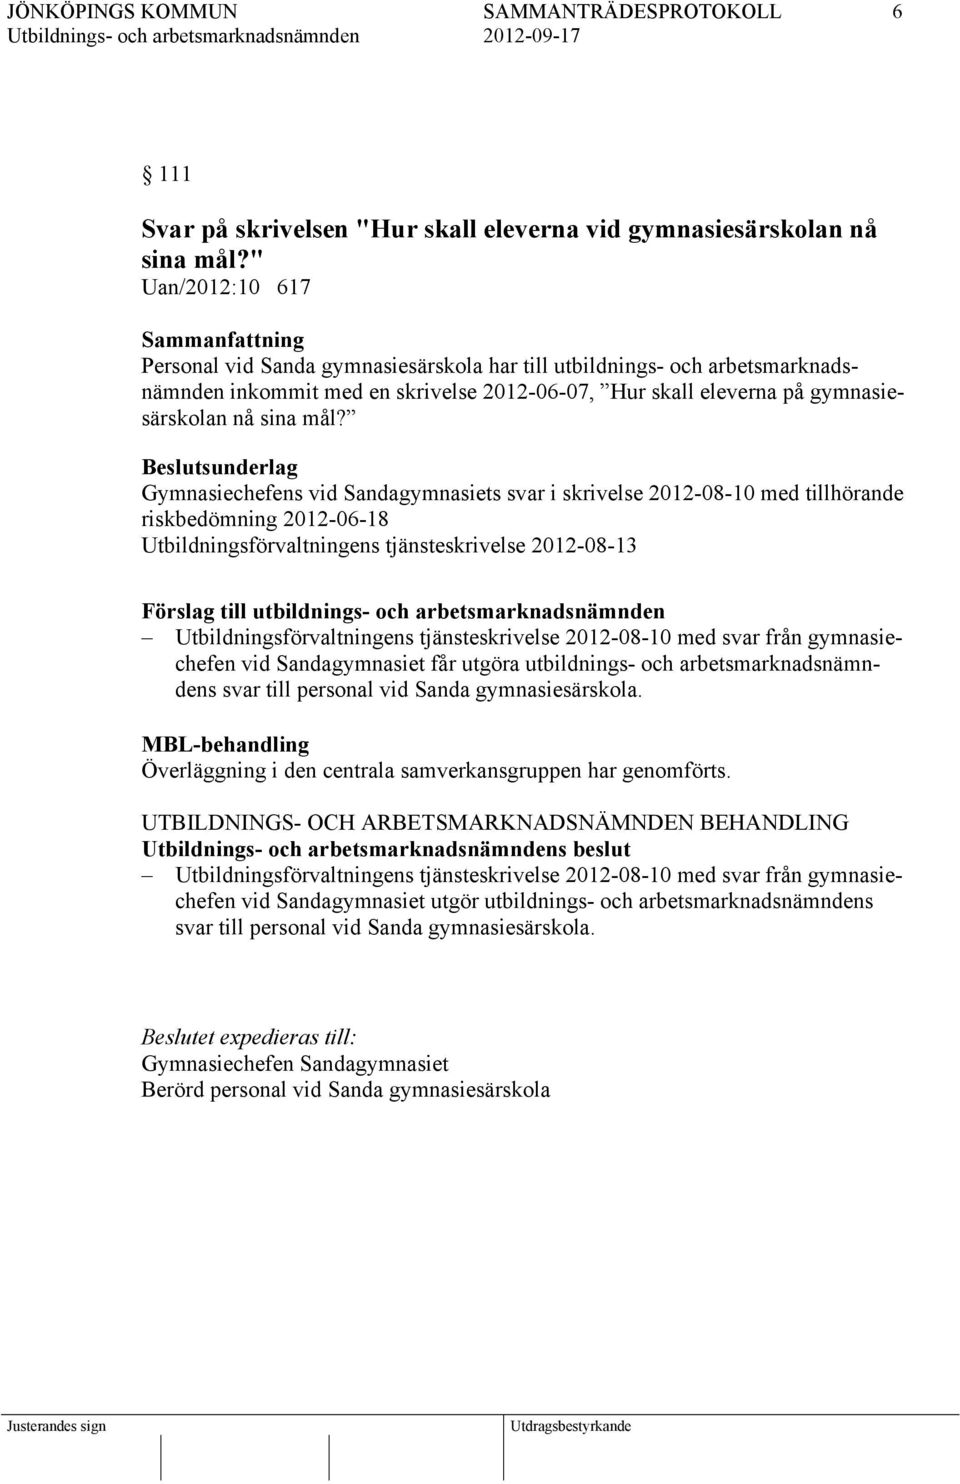 Beslutsunderlag Gymnasiechefens vid Sandagymnasiets svar i skrivelse 2012-08-10 med tillhörande riskbedömning 2012-06-18 Utbildningsförvaltningens tjänsteskrivelse 2012-08-13 Förslag till